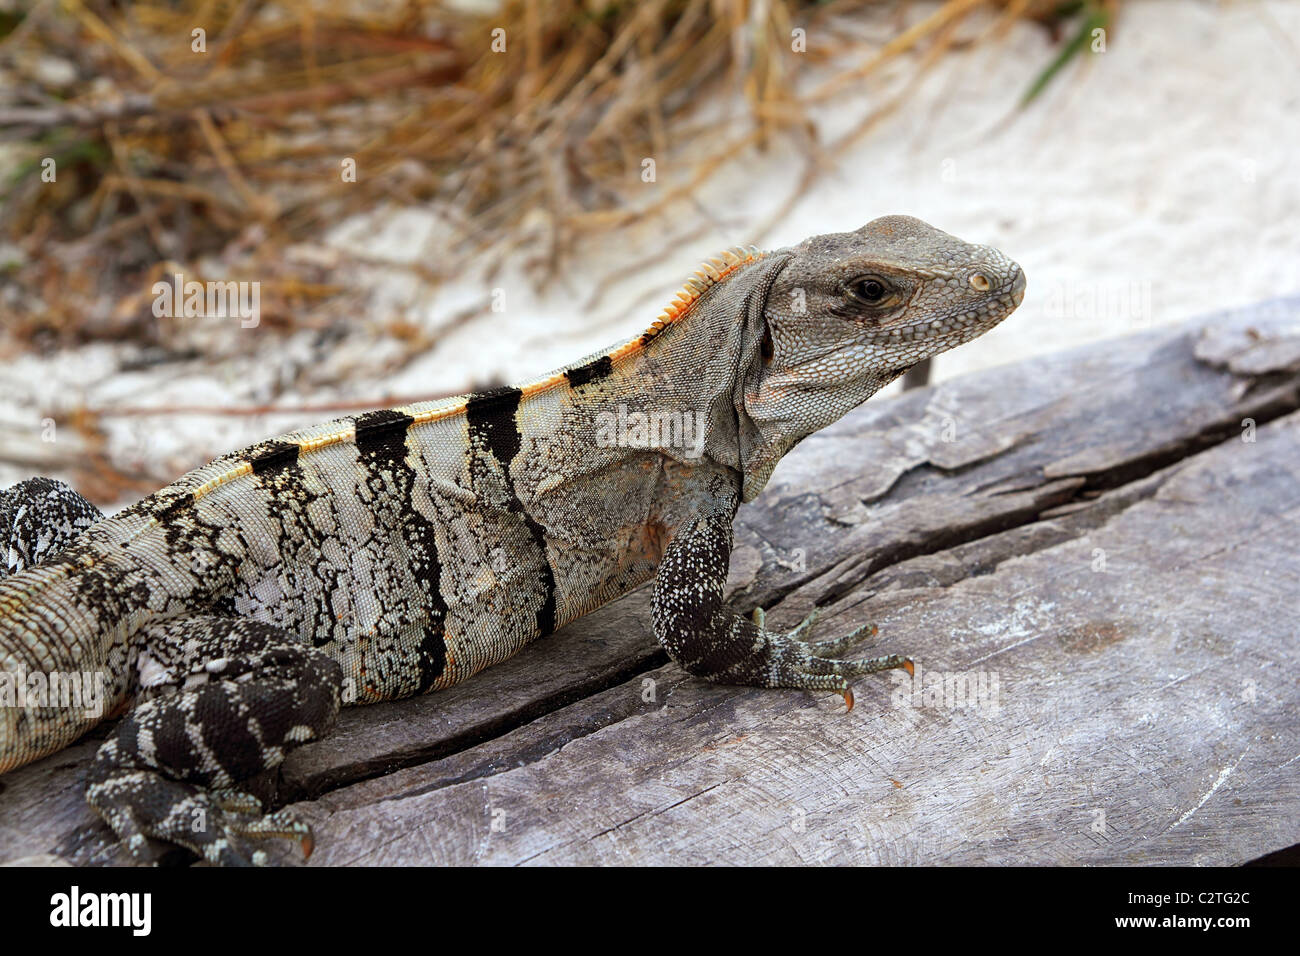 Iguana Mexico reptilian on aged gray wood near beach sand Stock Photo